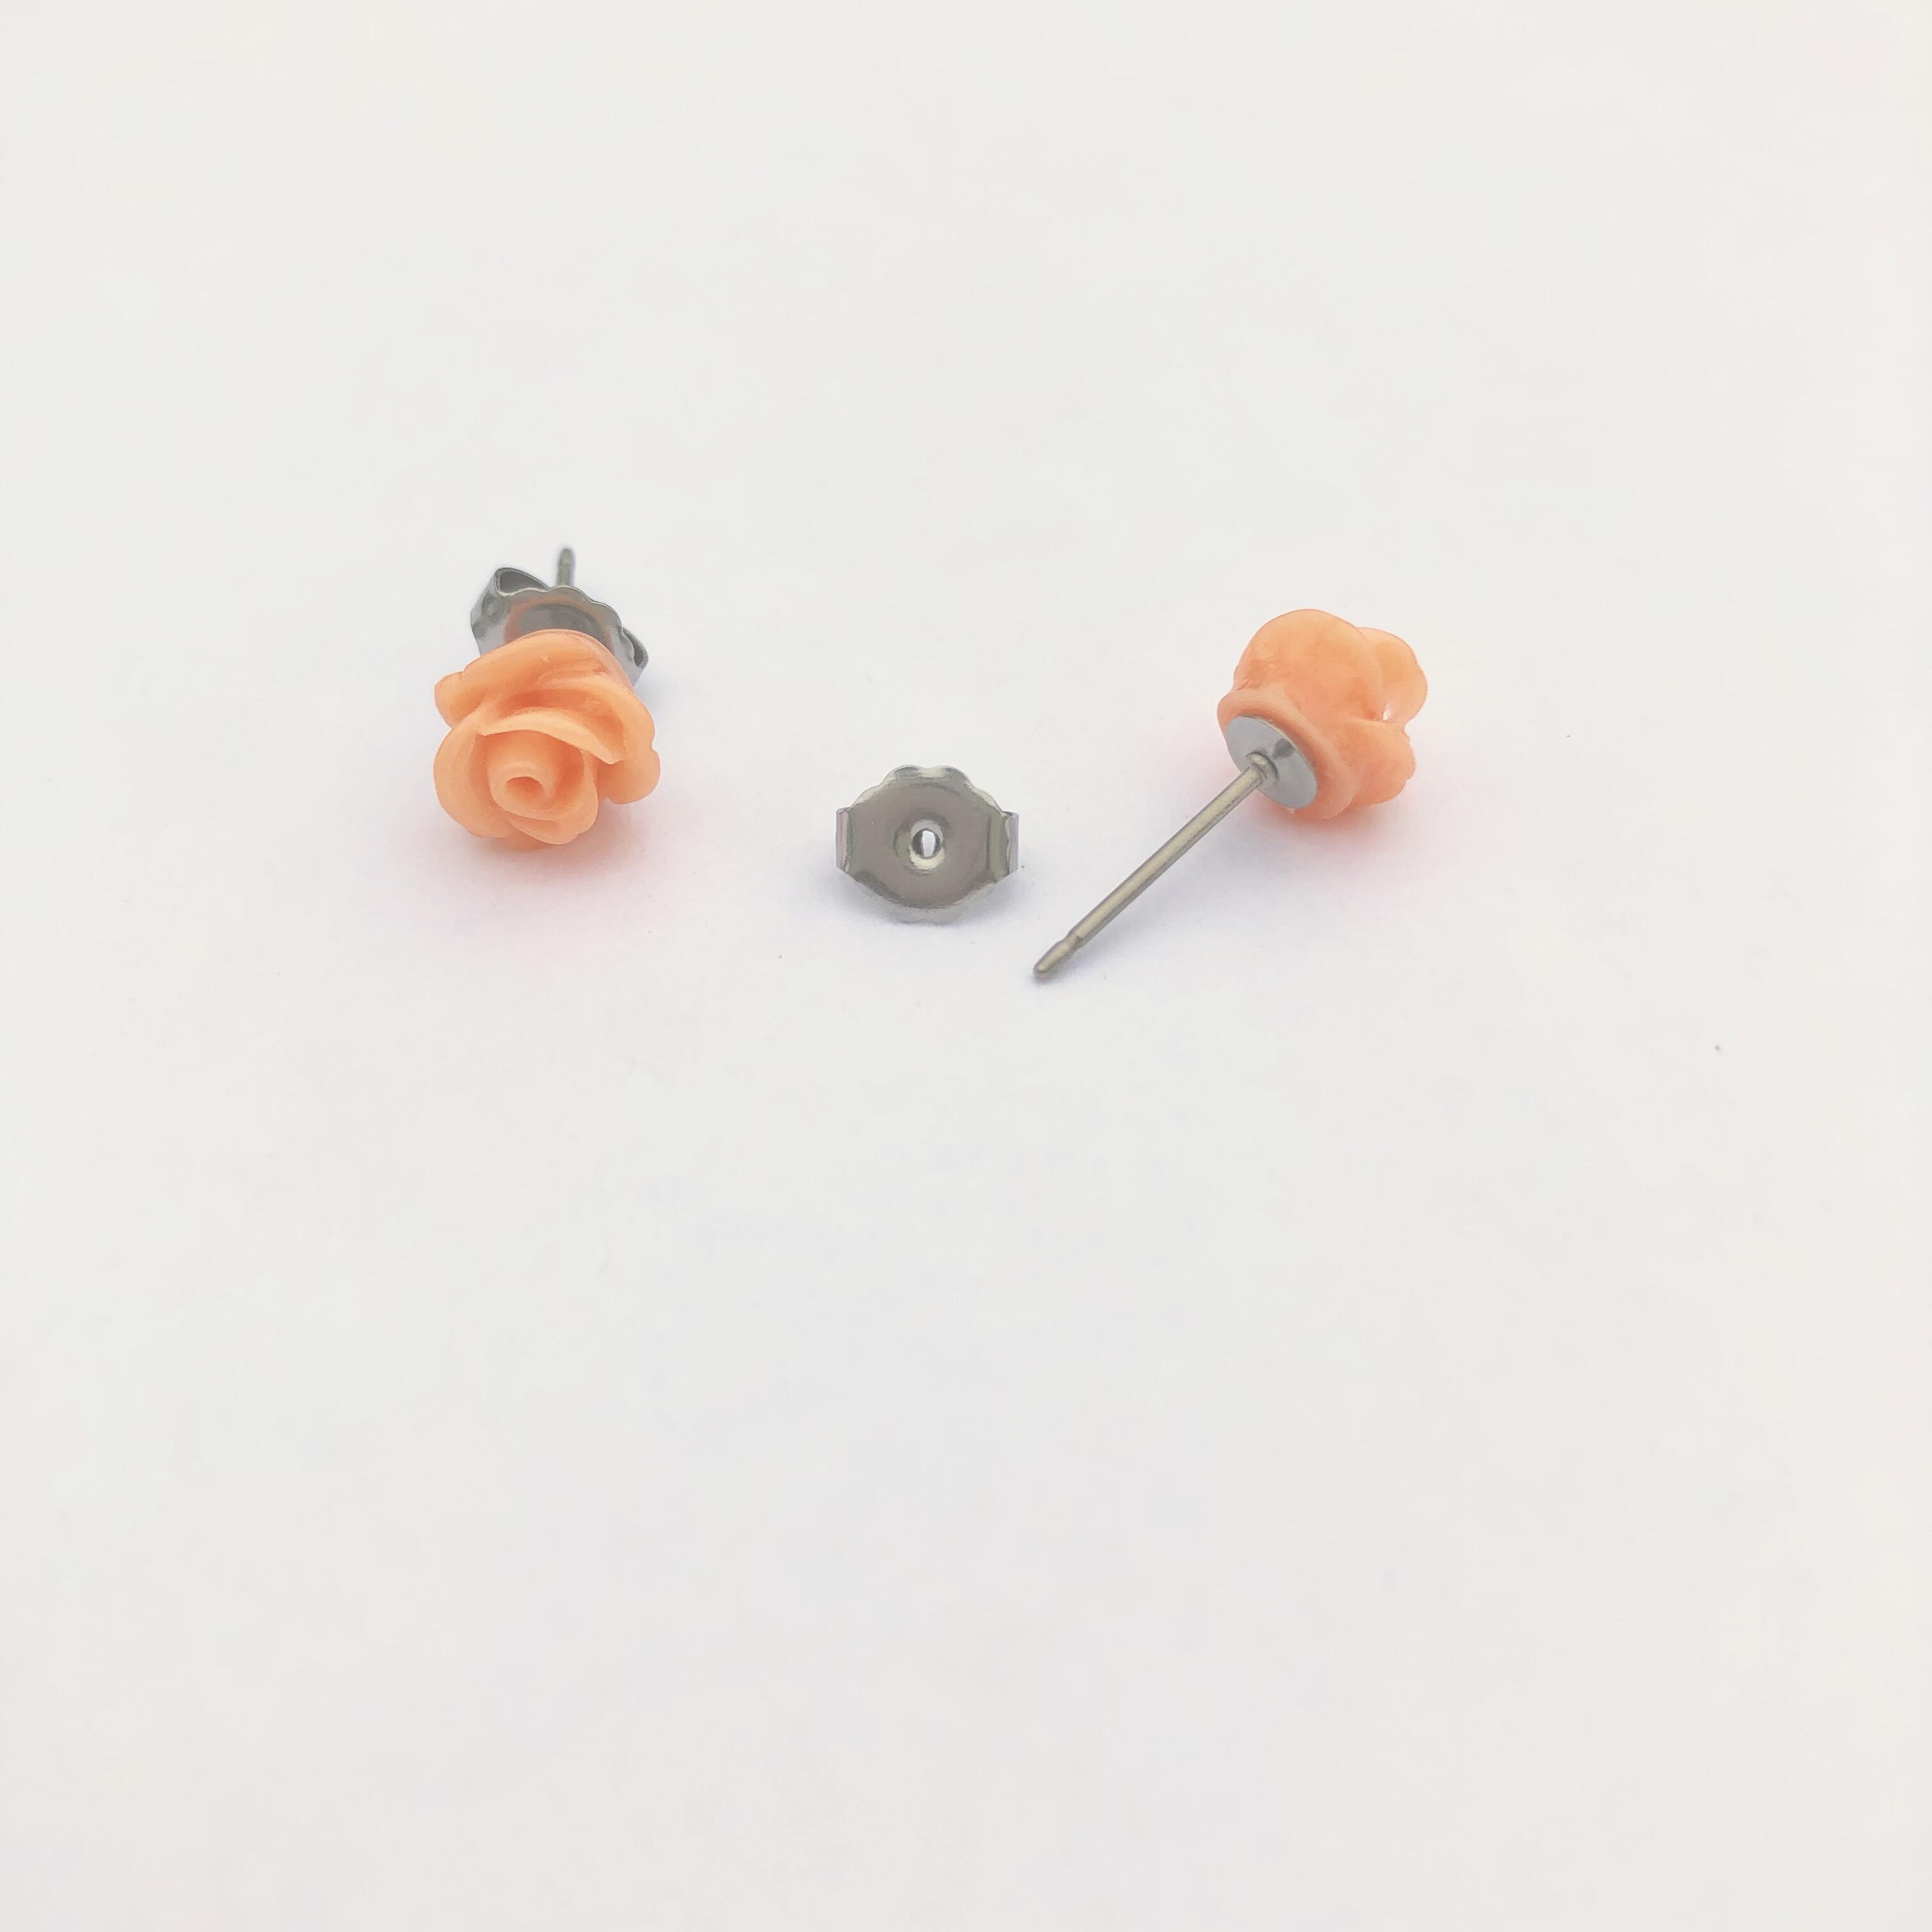 Dried Flower Earrings, Real Flower Studs, Hypoallergenic Earrings for Sensitive  Ears, Plastic Post Earrings, Resin Jewelry 